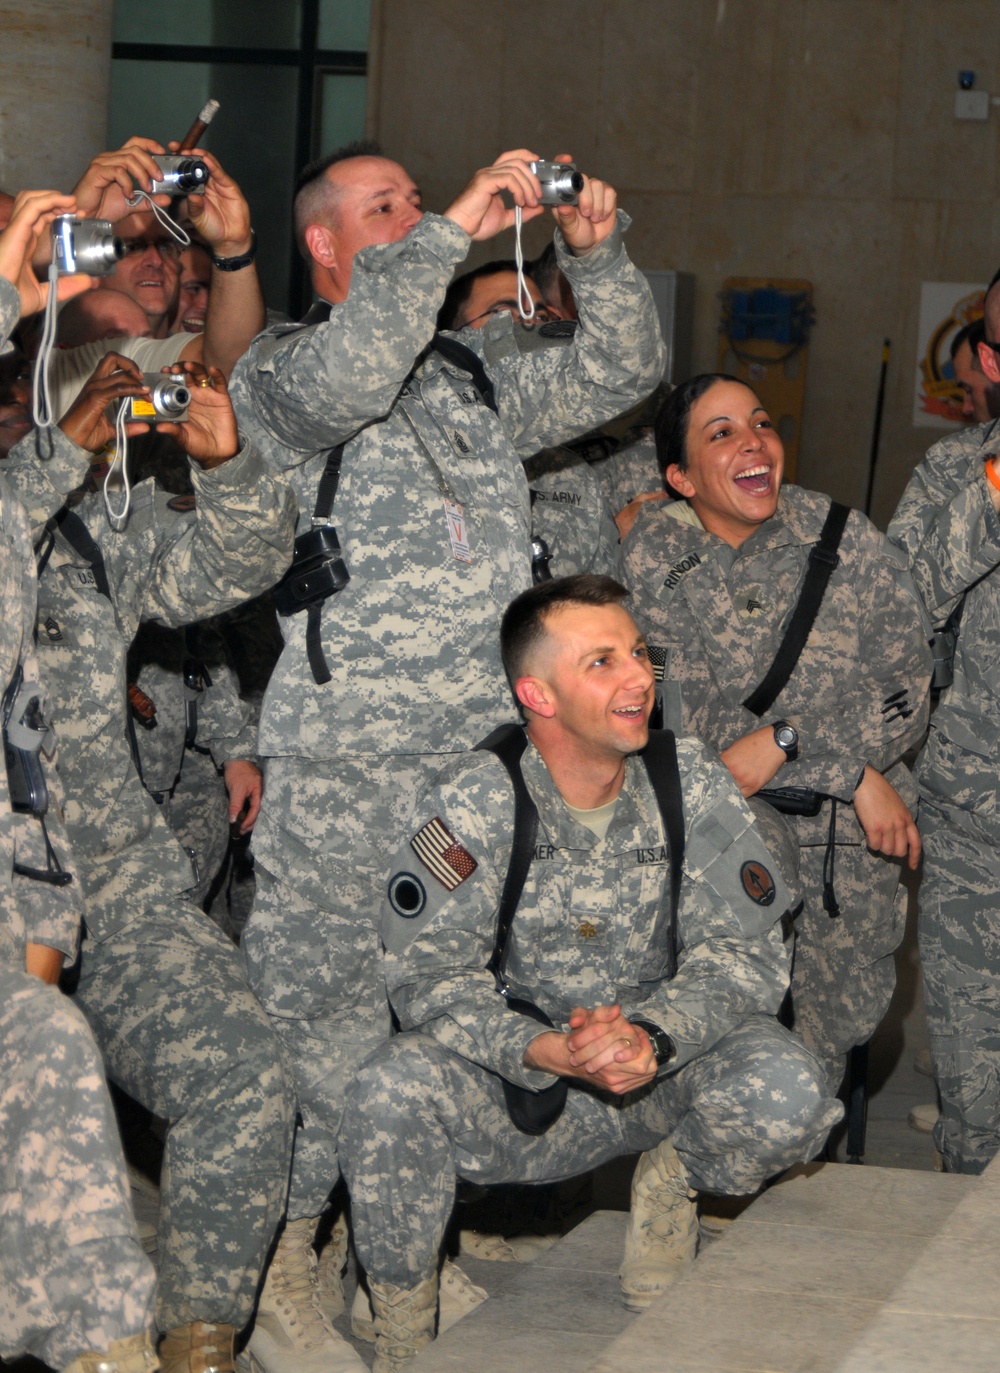 NFL Coaches visit U.S. service members in Iraq